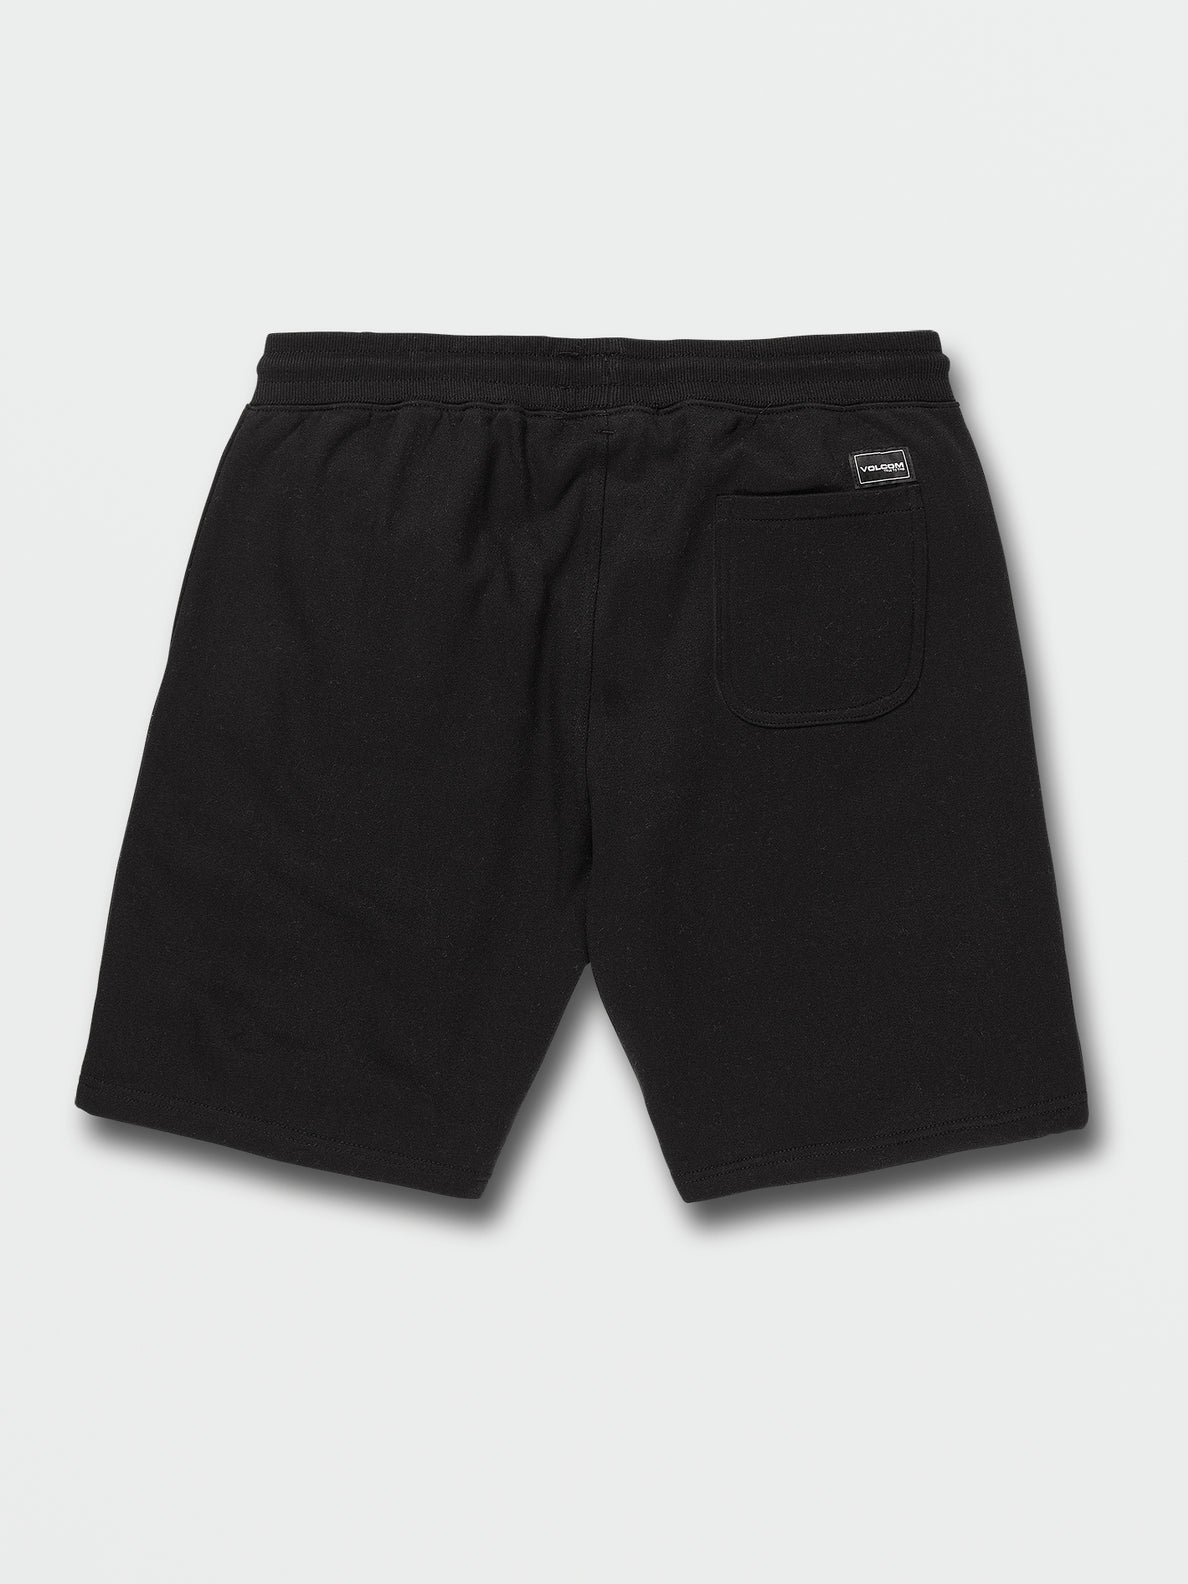 Booker Fleece Shorts - Black (A1012201_BLK) [B]